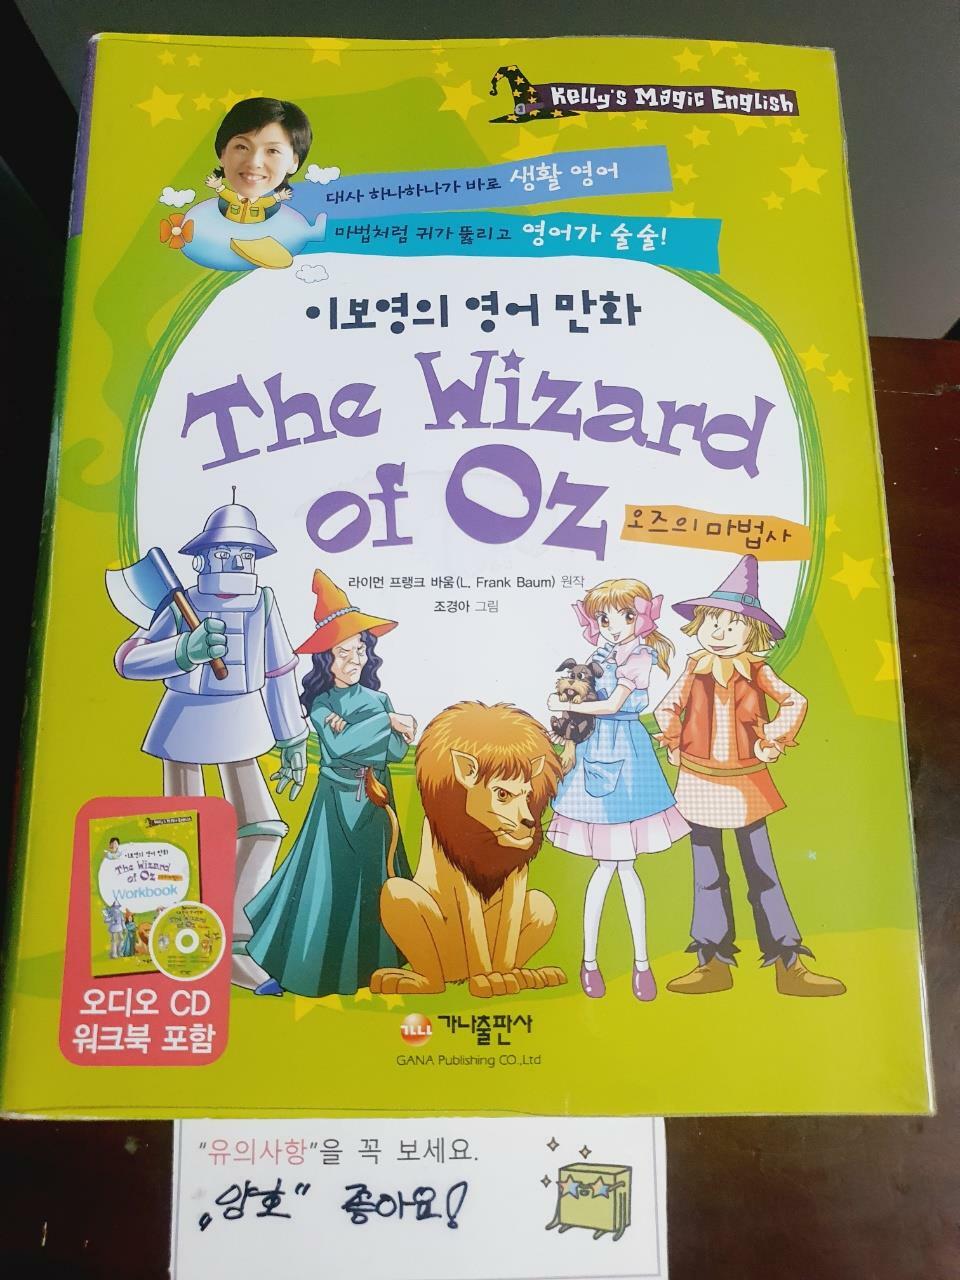 [중고] 이보영의 영어 만화 The Wizard of Oz (책 + 워크북 + CD 1장)